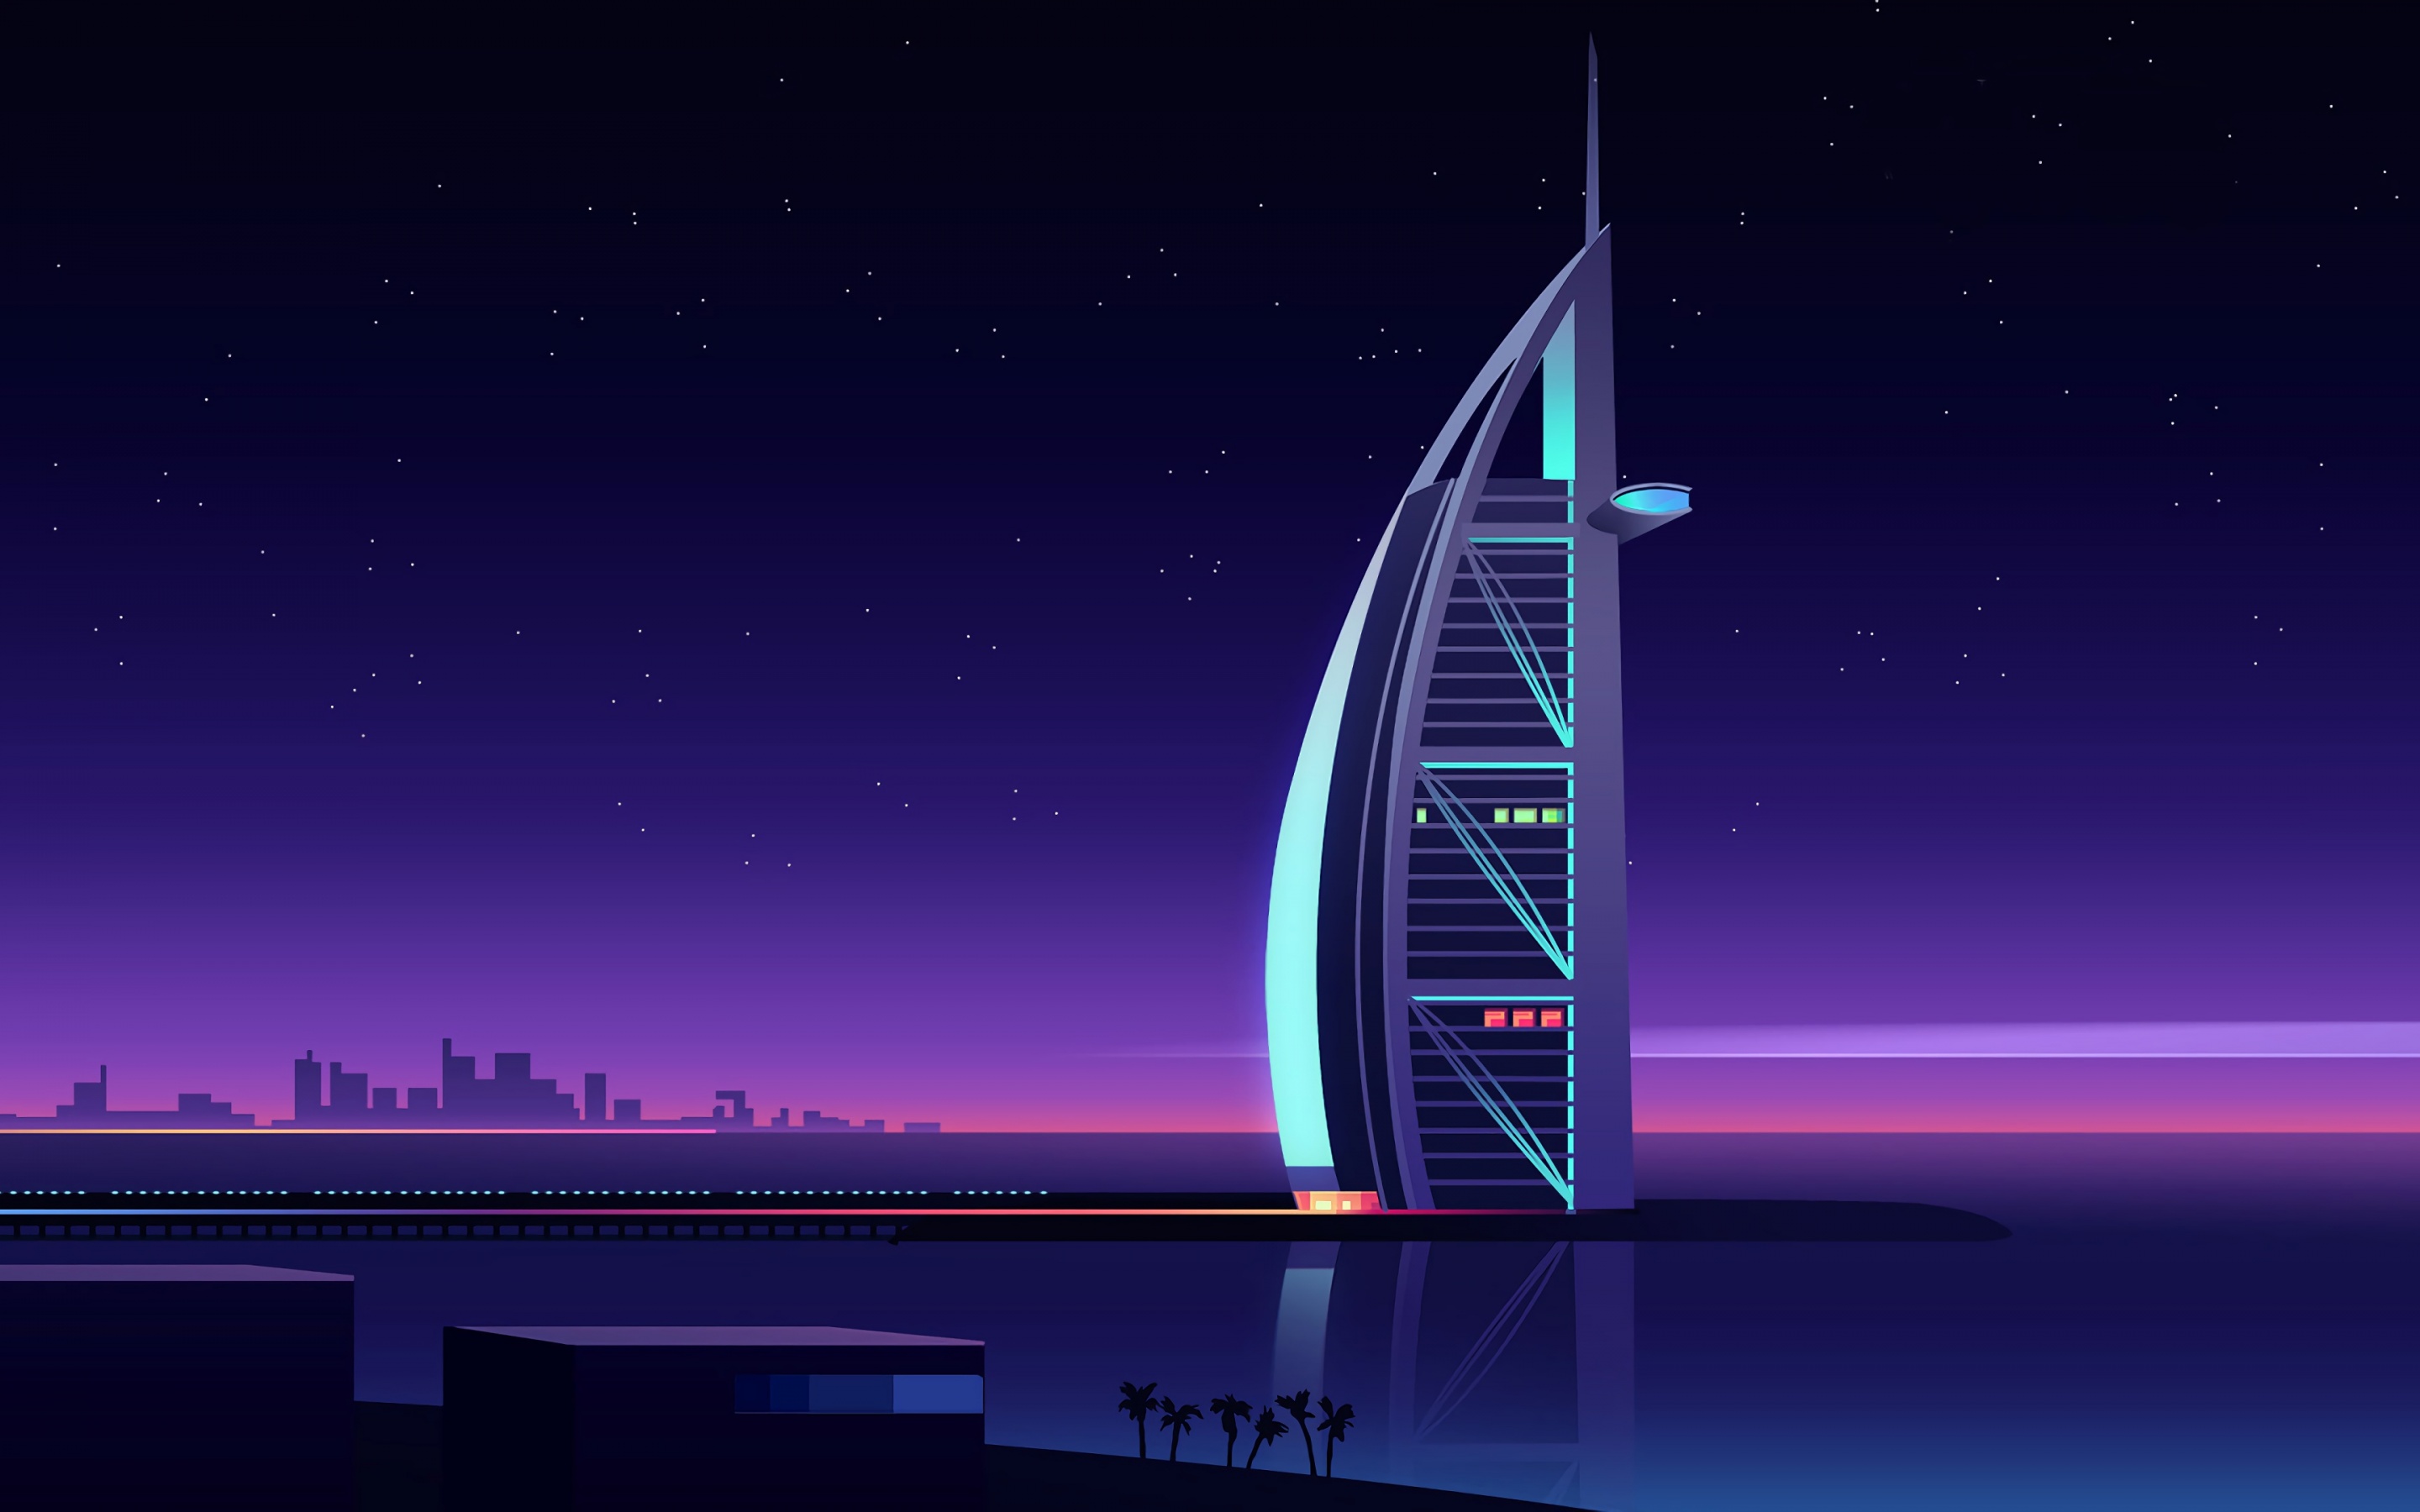 Bạn muốn tìm kiếm hình nền độc đáo và đẹp mắt nhất cho điện thoại của mình? Thử chọn hình nền Burj Al Arab 4K, một khách sạn sang trọng và lộng lẫy, với khung cảnh đầy màu sắc vào ban đêm. Bạn sẽ dễ dàng trở thành tâm điểm của mọi cuộc trò chuyện khi sử dụng hình nền đặc biệt này.